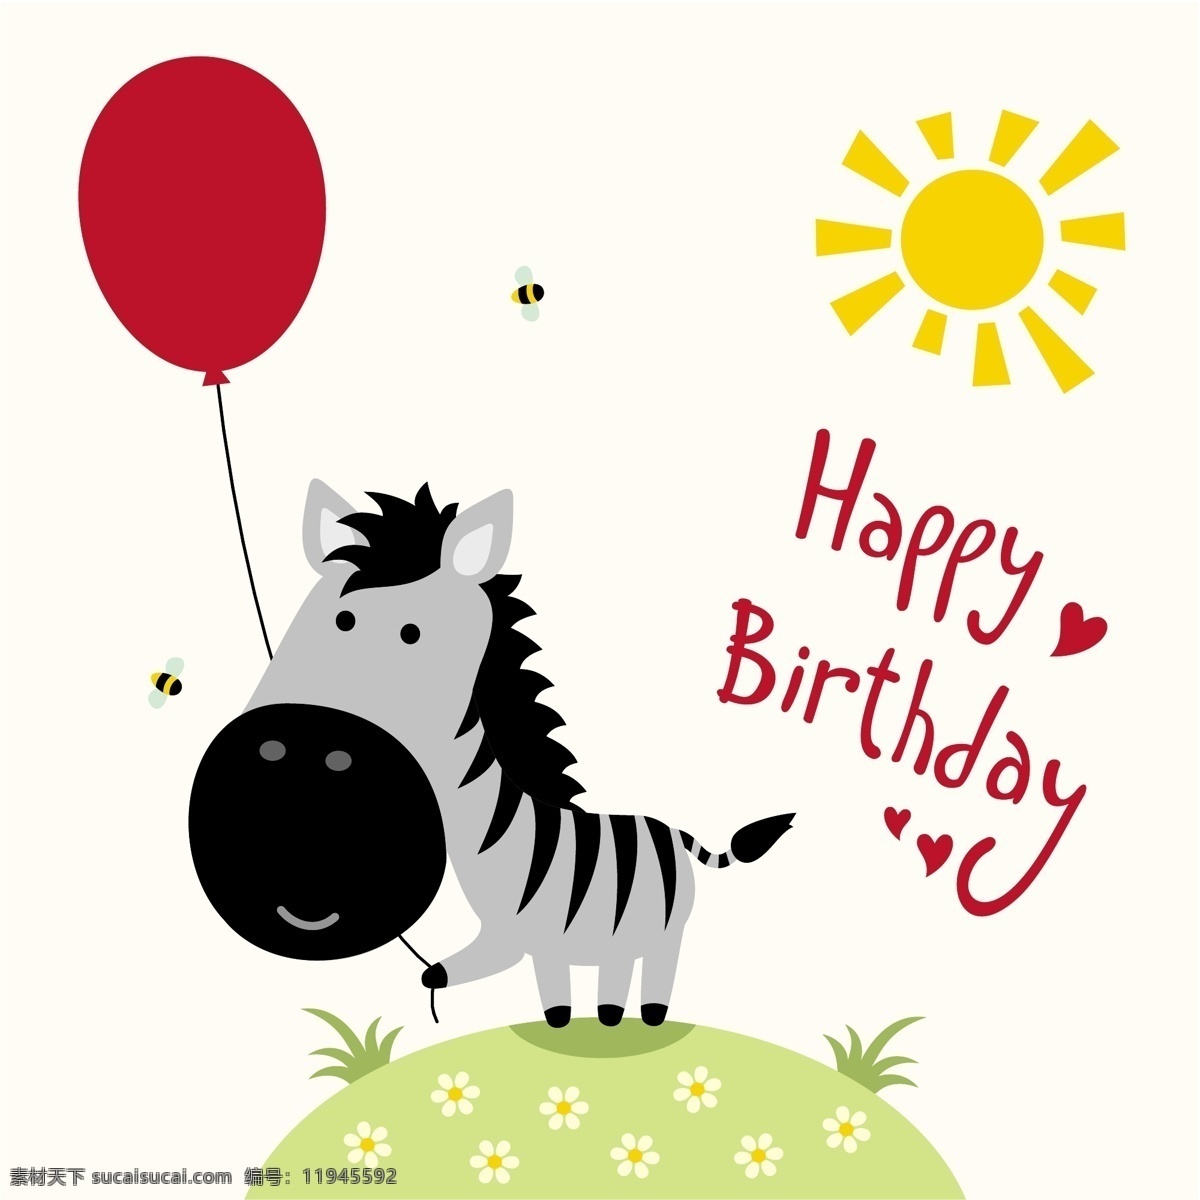 卡通生日动物 气球 太阳 蜜蜂 动物 卡通图画 生日快乐 生日贺卡 创意卡通 矢量素材 长颈鹿 斑马 狮子 老虎 文化艺术 绘画书法